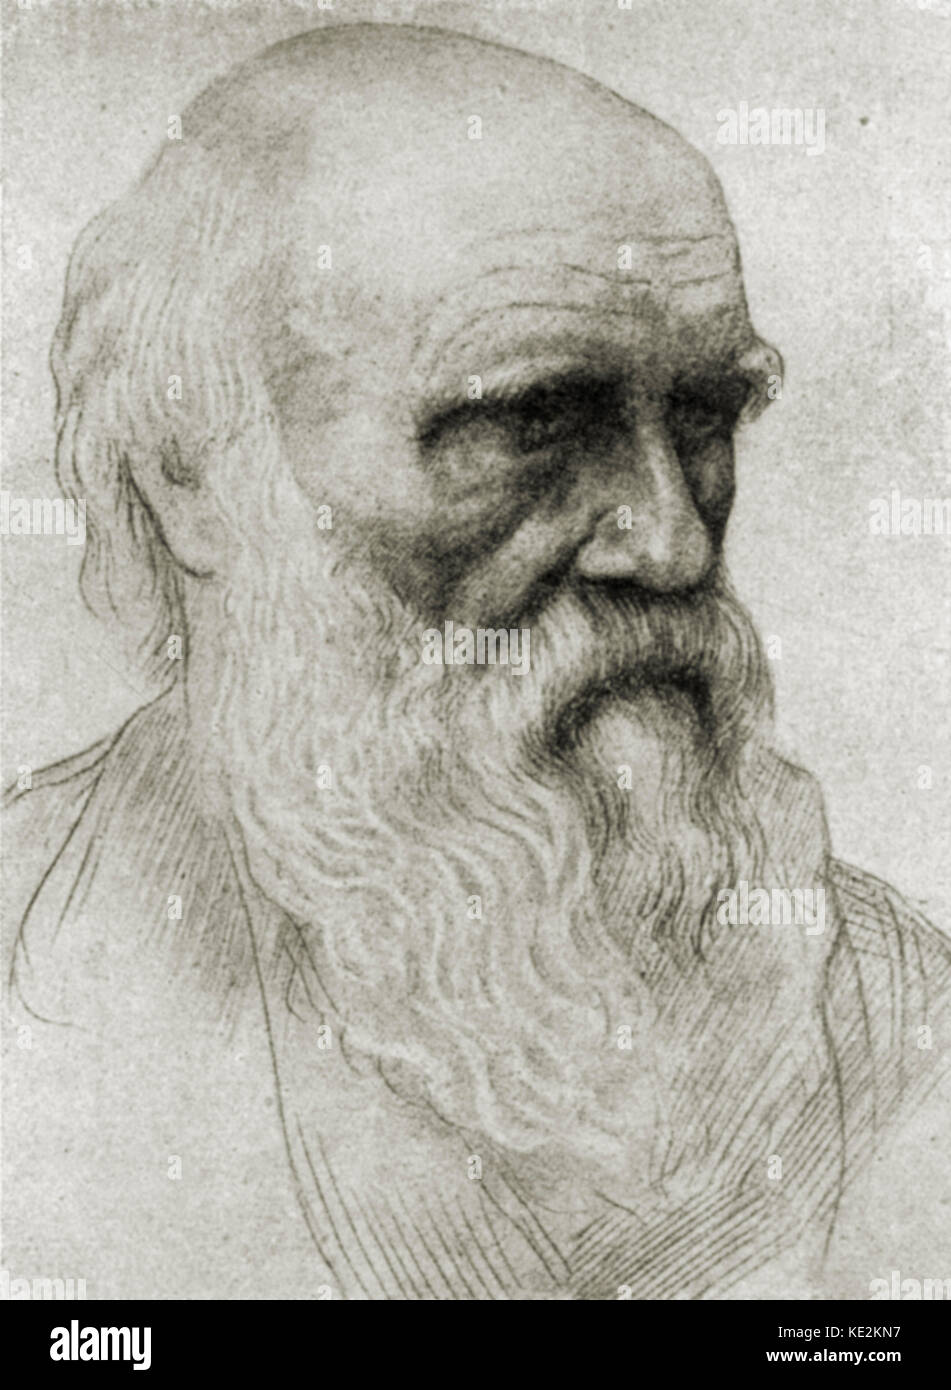 Charles Darwin - Porträt des britischen Naturforschers. Zeichnung von Alphonse Legros. 12 Februar 1809 - 19. April 1882. Künstler AL: 8. Mai 1837 - vom 8. Dezember 1911 Stockfoto